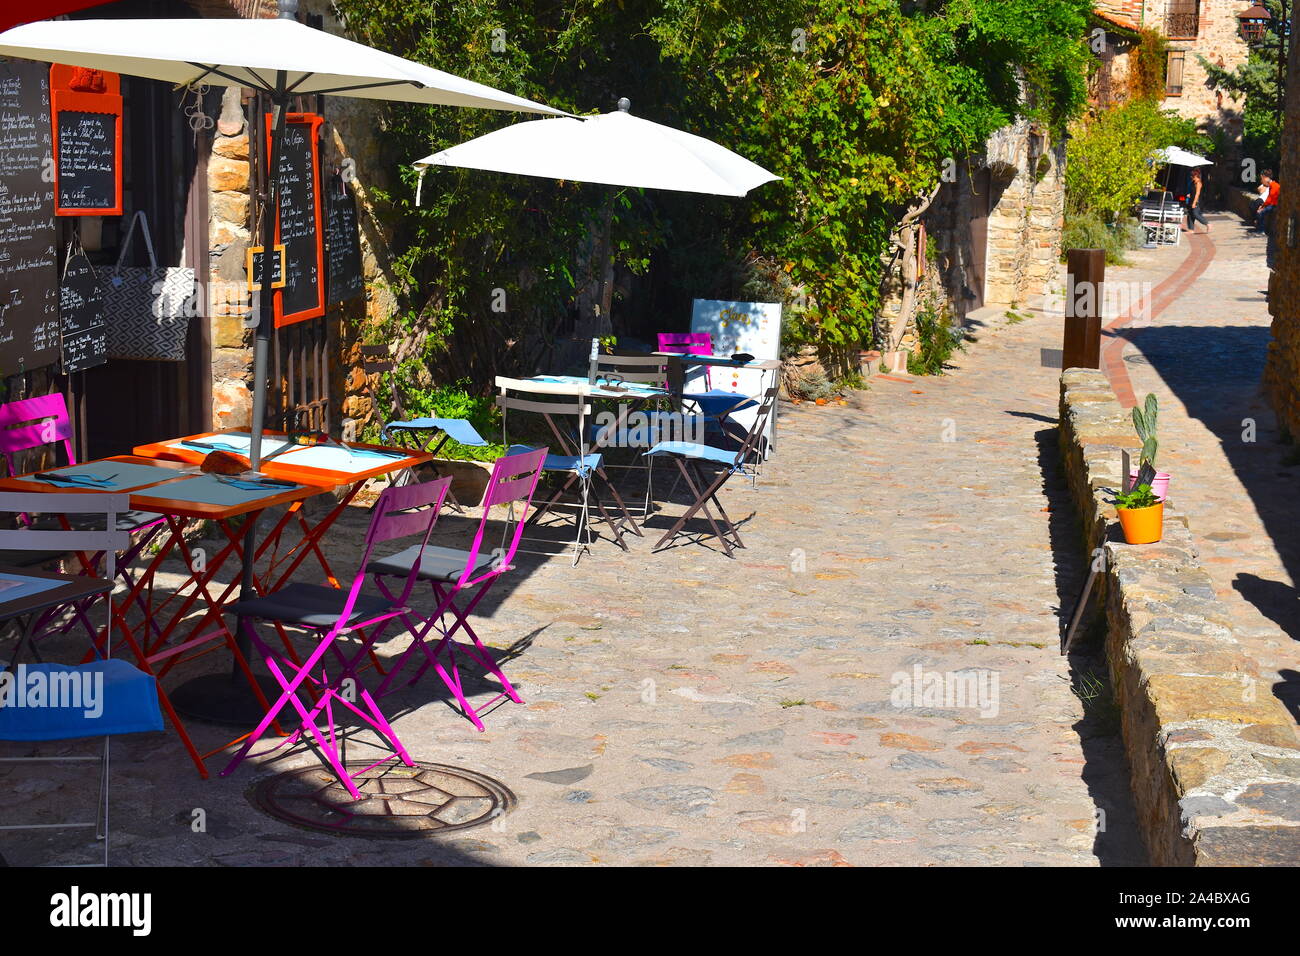 Familienbetrieb organic Restaurant auf einer Straße mit Kopfsteinpflaster in einem mittelalterlichen französischen Stadt. Bunte Tische, Stühle, weiße Sonnenschirme und Menüs auf einer Steinmauer. Stockfoto